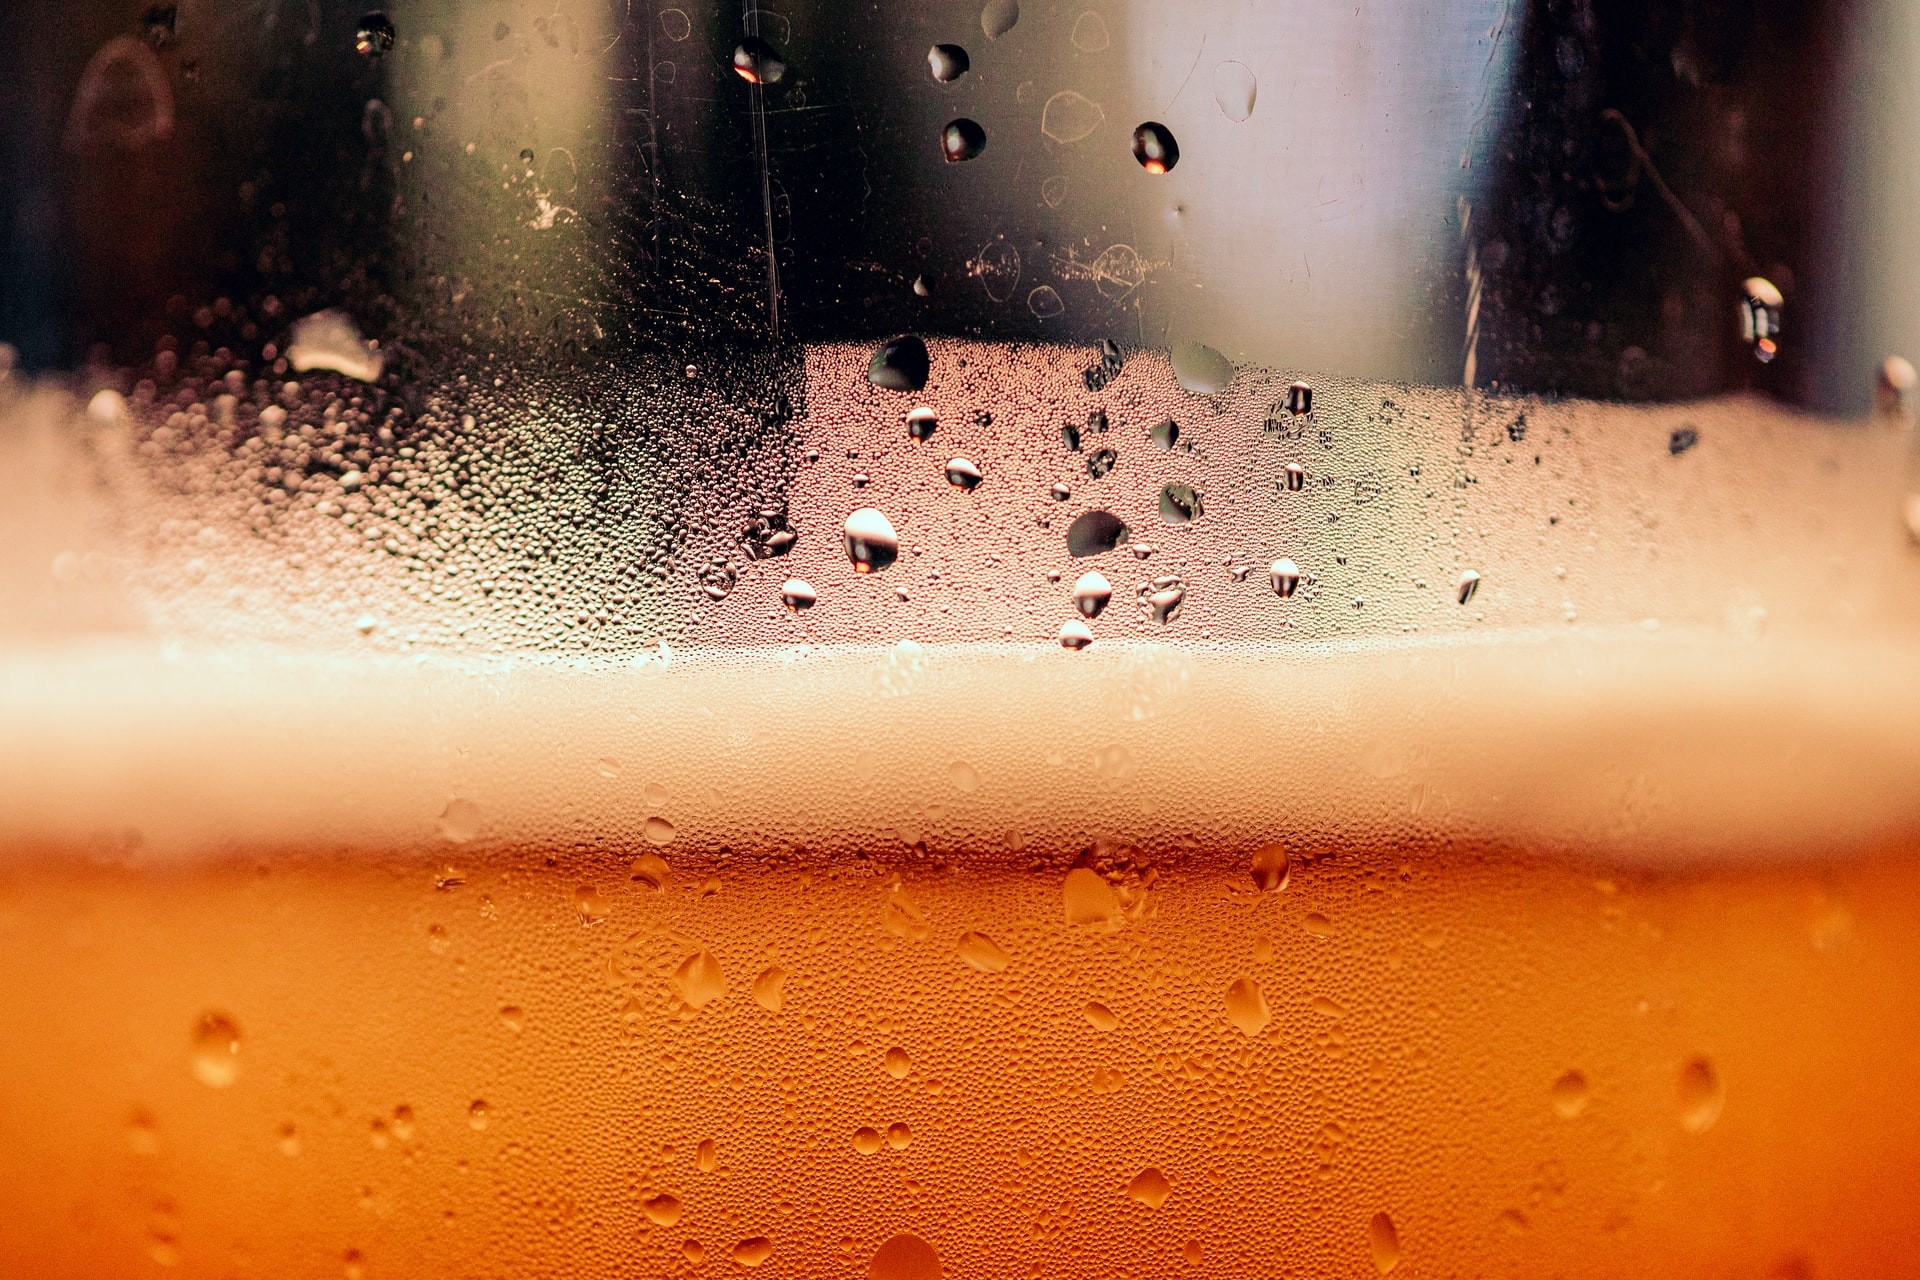 Não há dose segura de consumo de álcool para o cérebro, aponta estudo (Foto: Timothy Dykes/Unsplash)